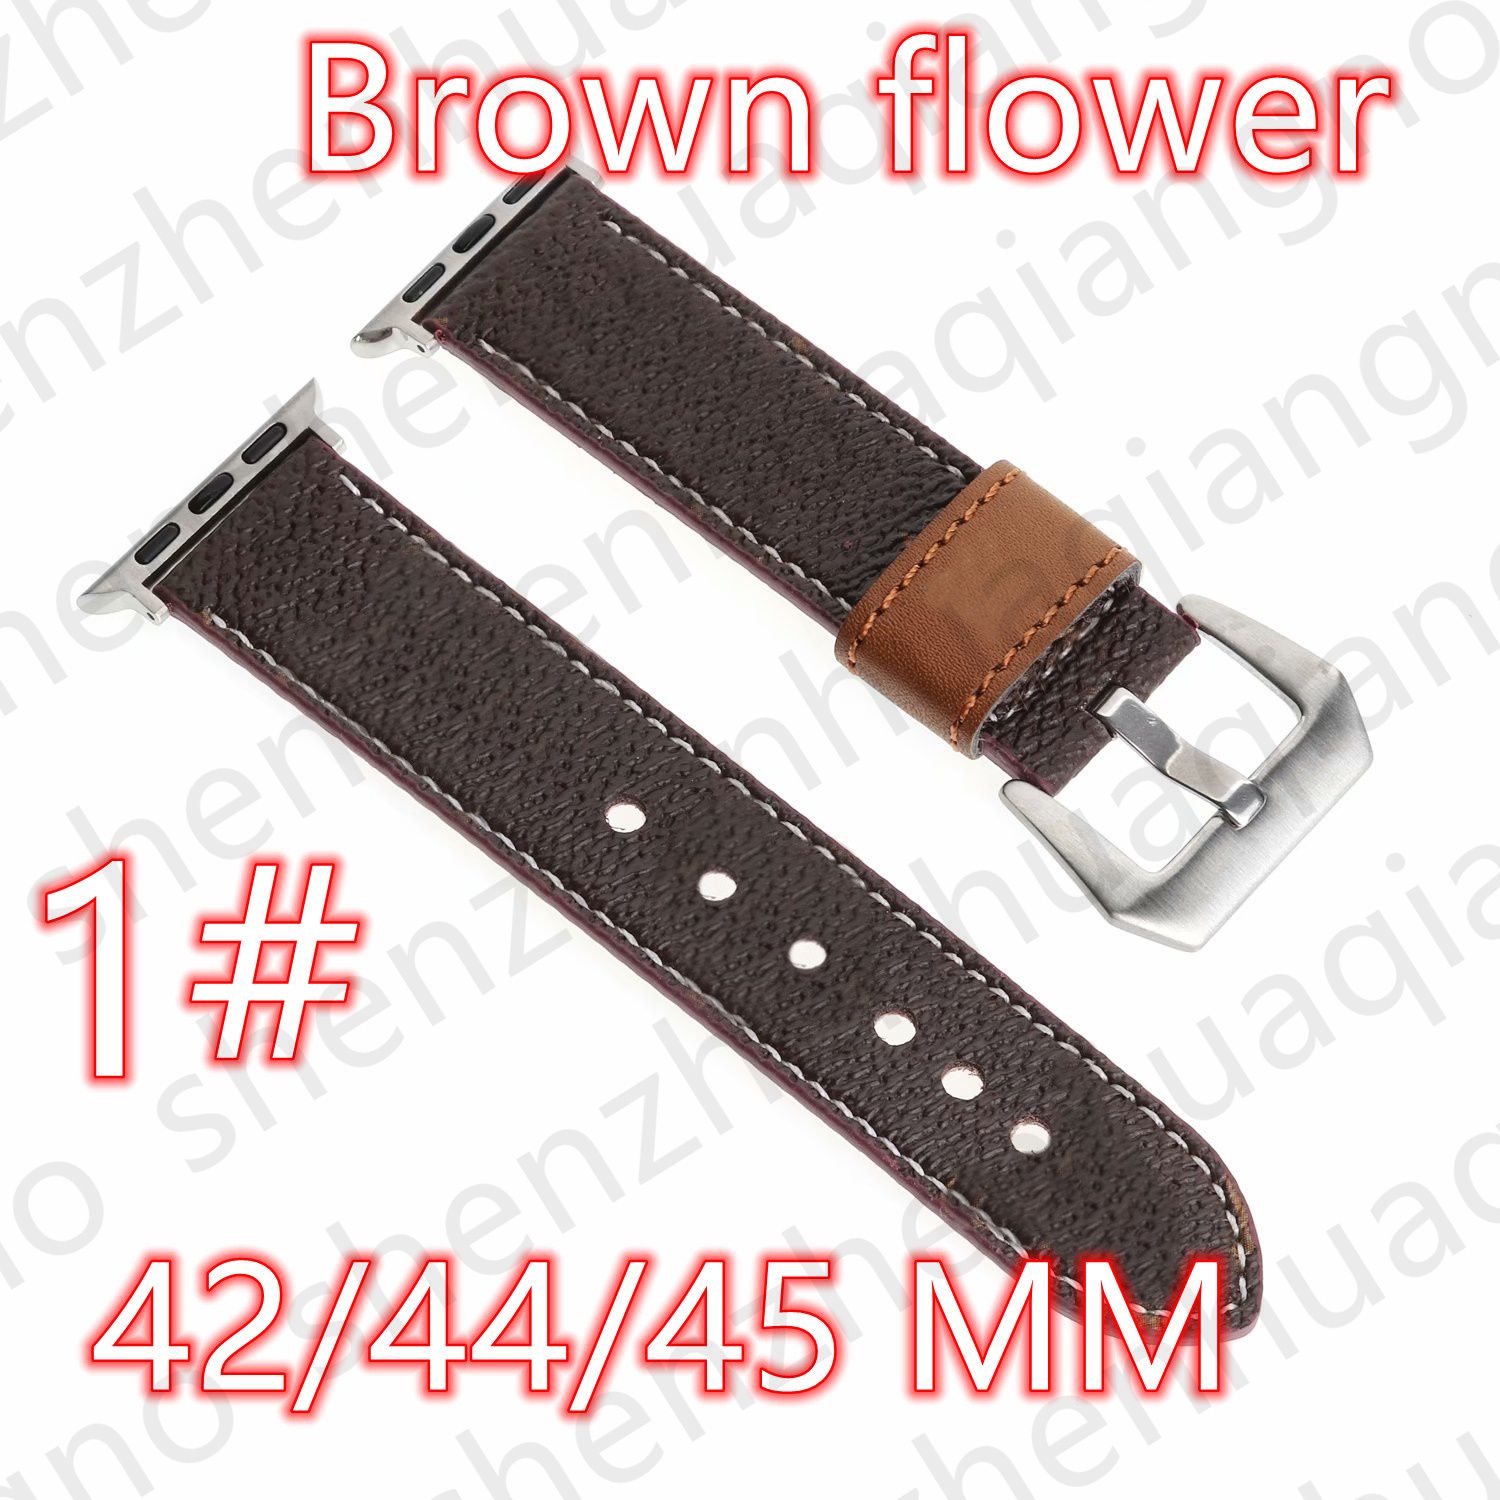 1#42/44/45/49mm Brown Flower V LOGO